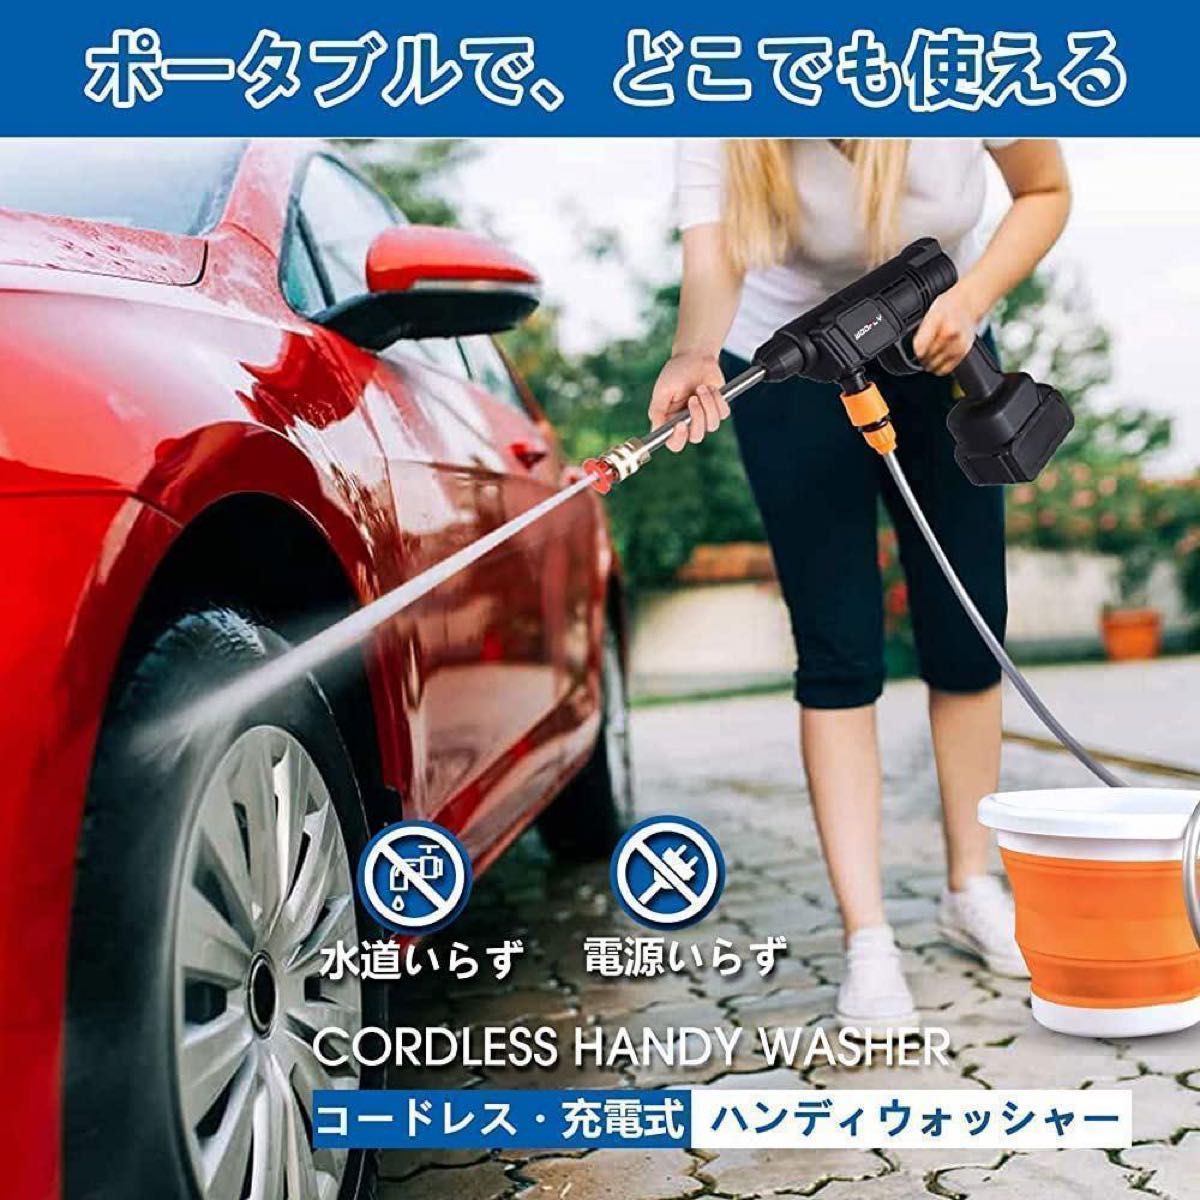 高圧洗浄機 ハンディウォッシュ 洗車 ベランダ 掃除 洗浄 ワイヤレス 簡単使用 ハンディ 掃除機 庭 